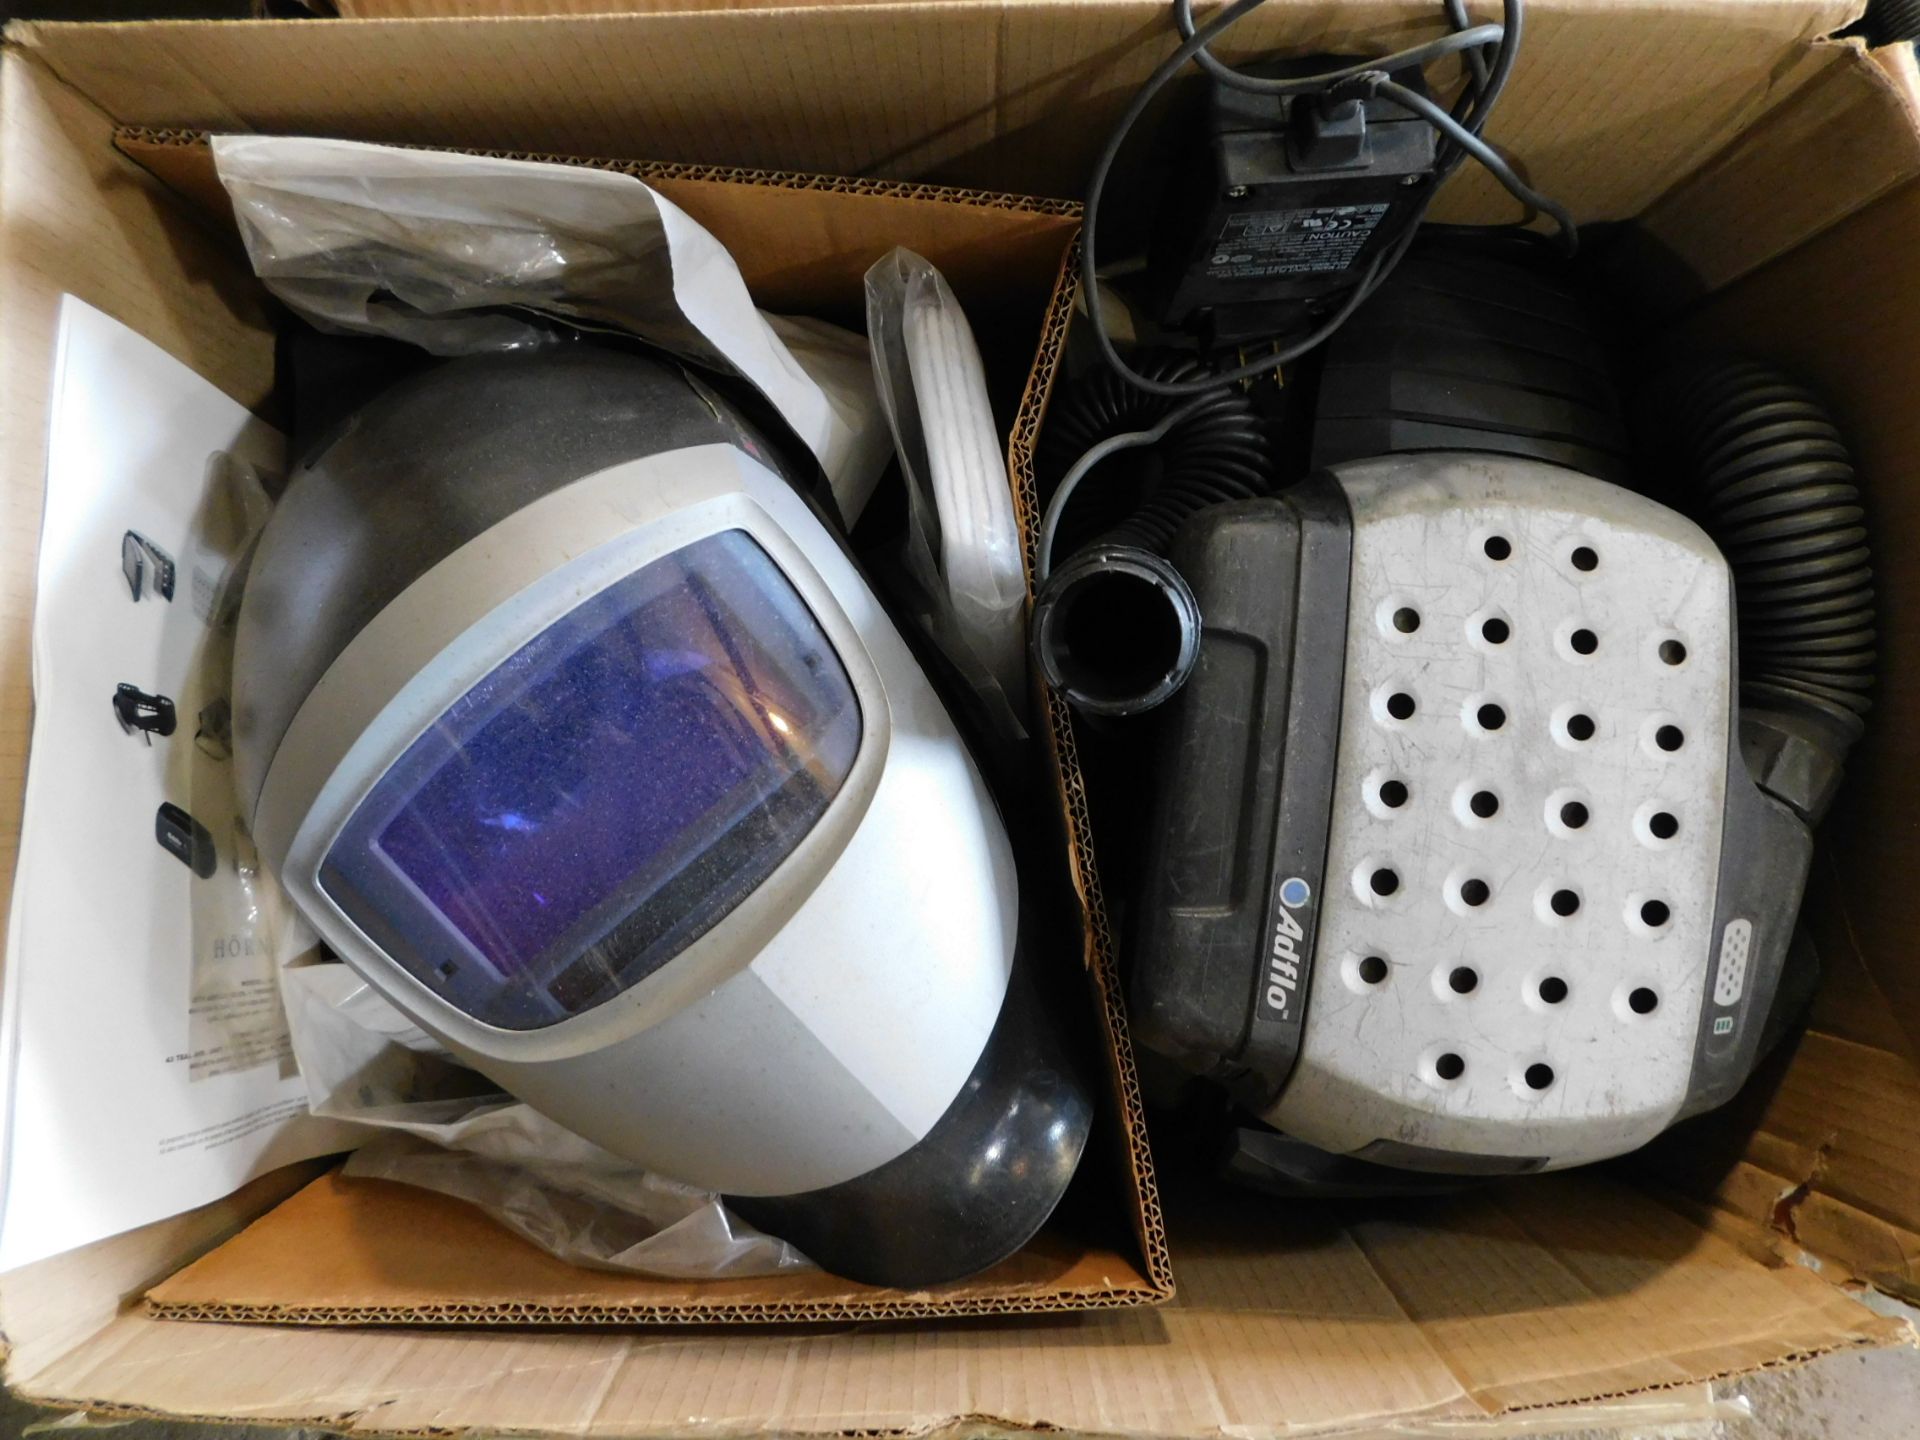 Welding Helmet and Adflow Respirator